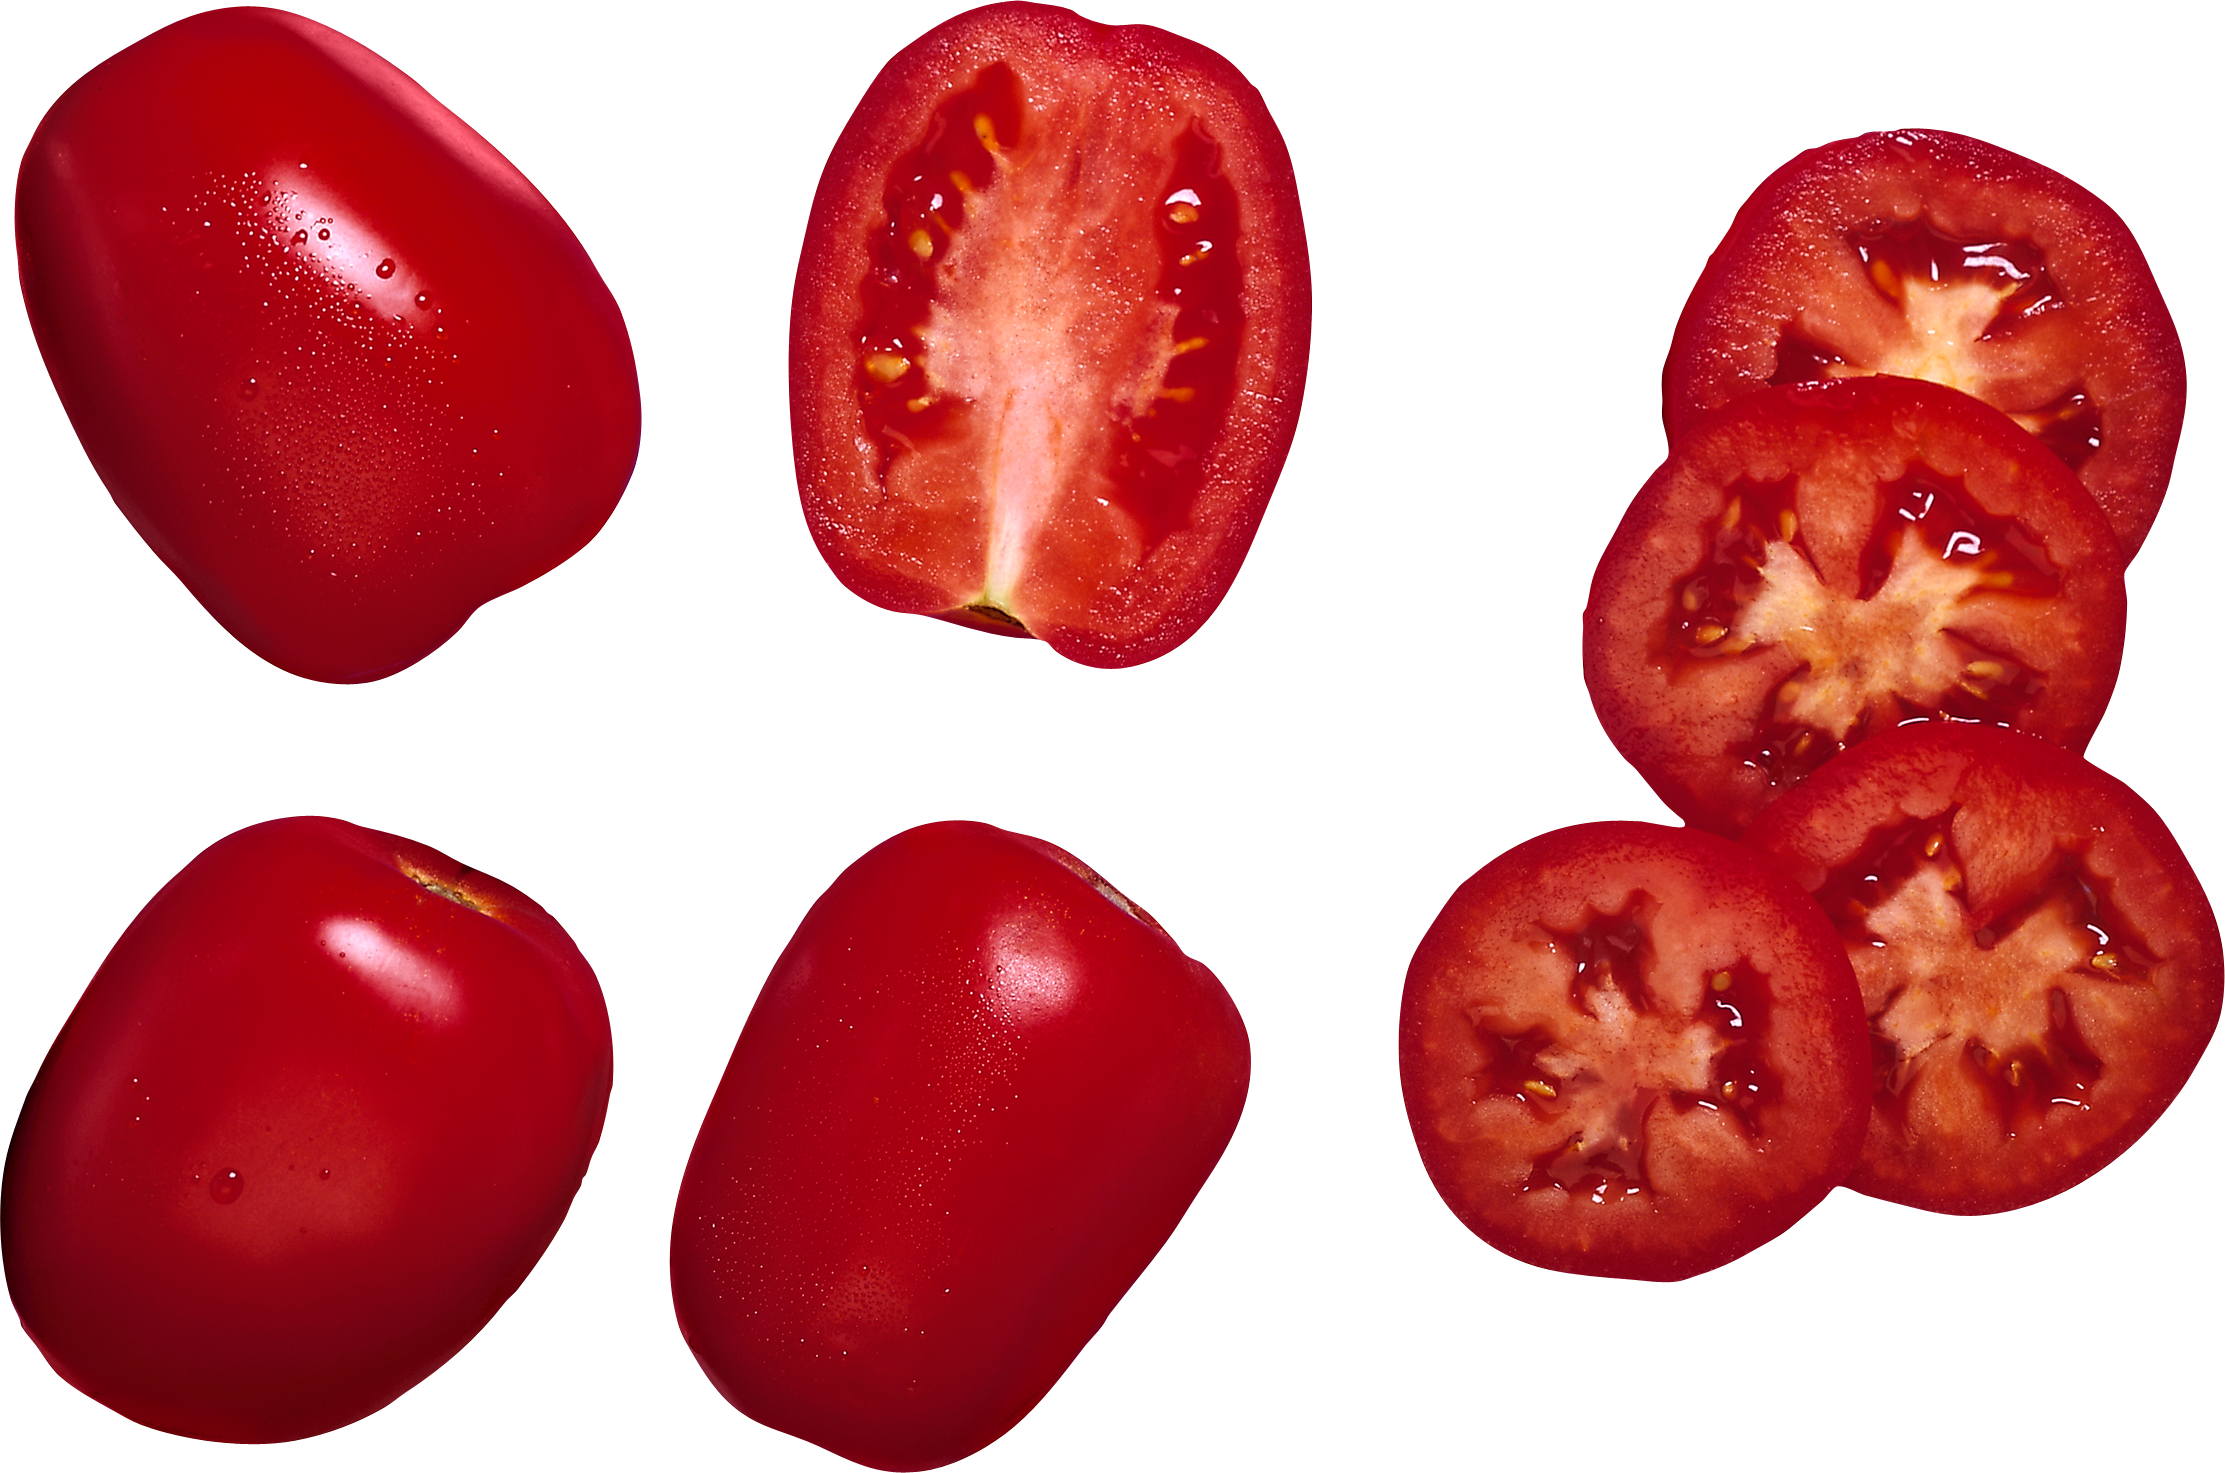 Tomate cereja